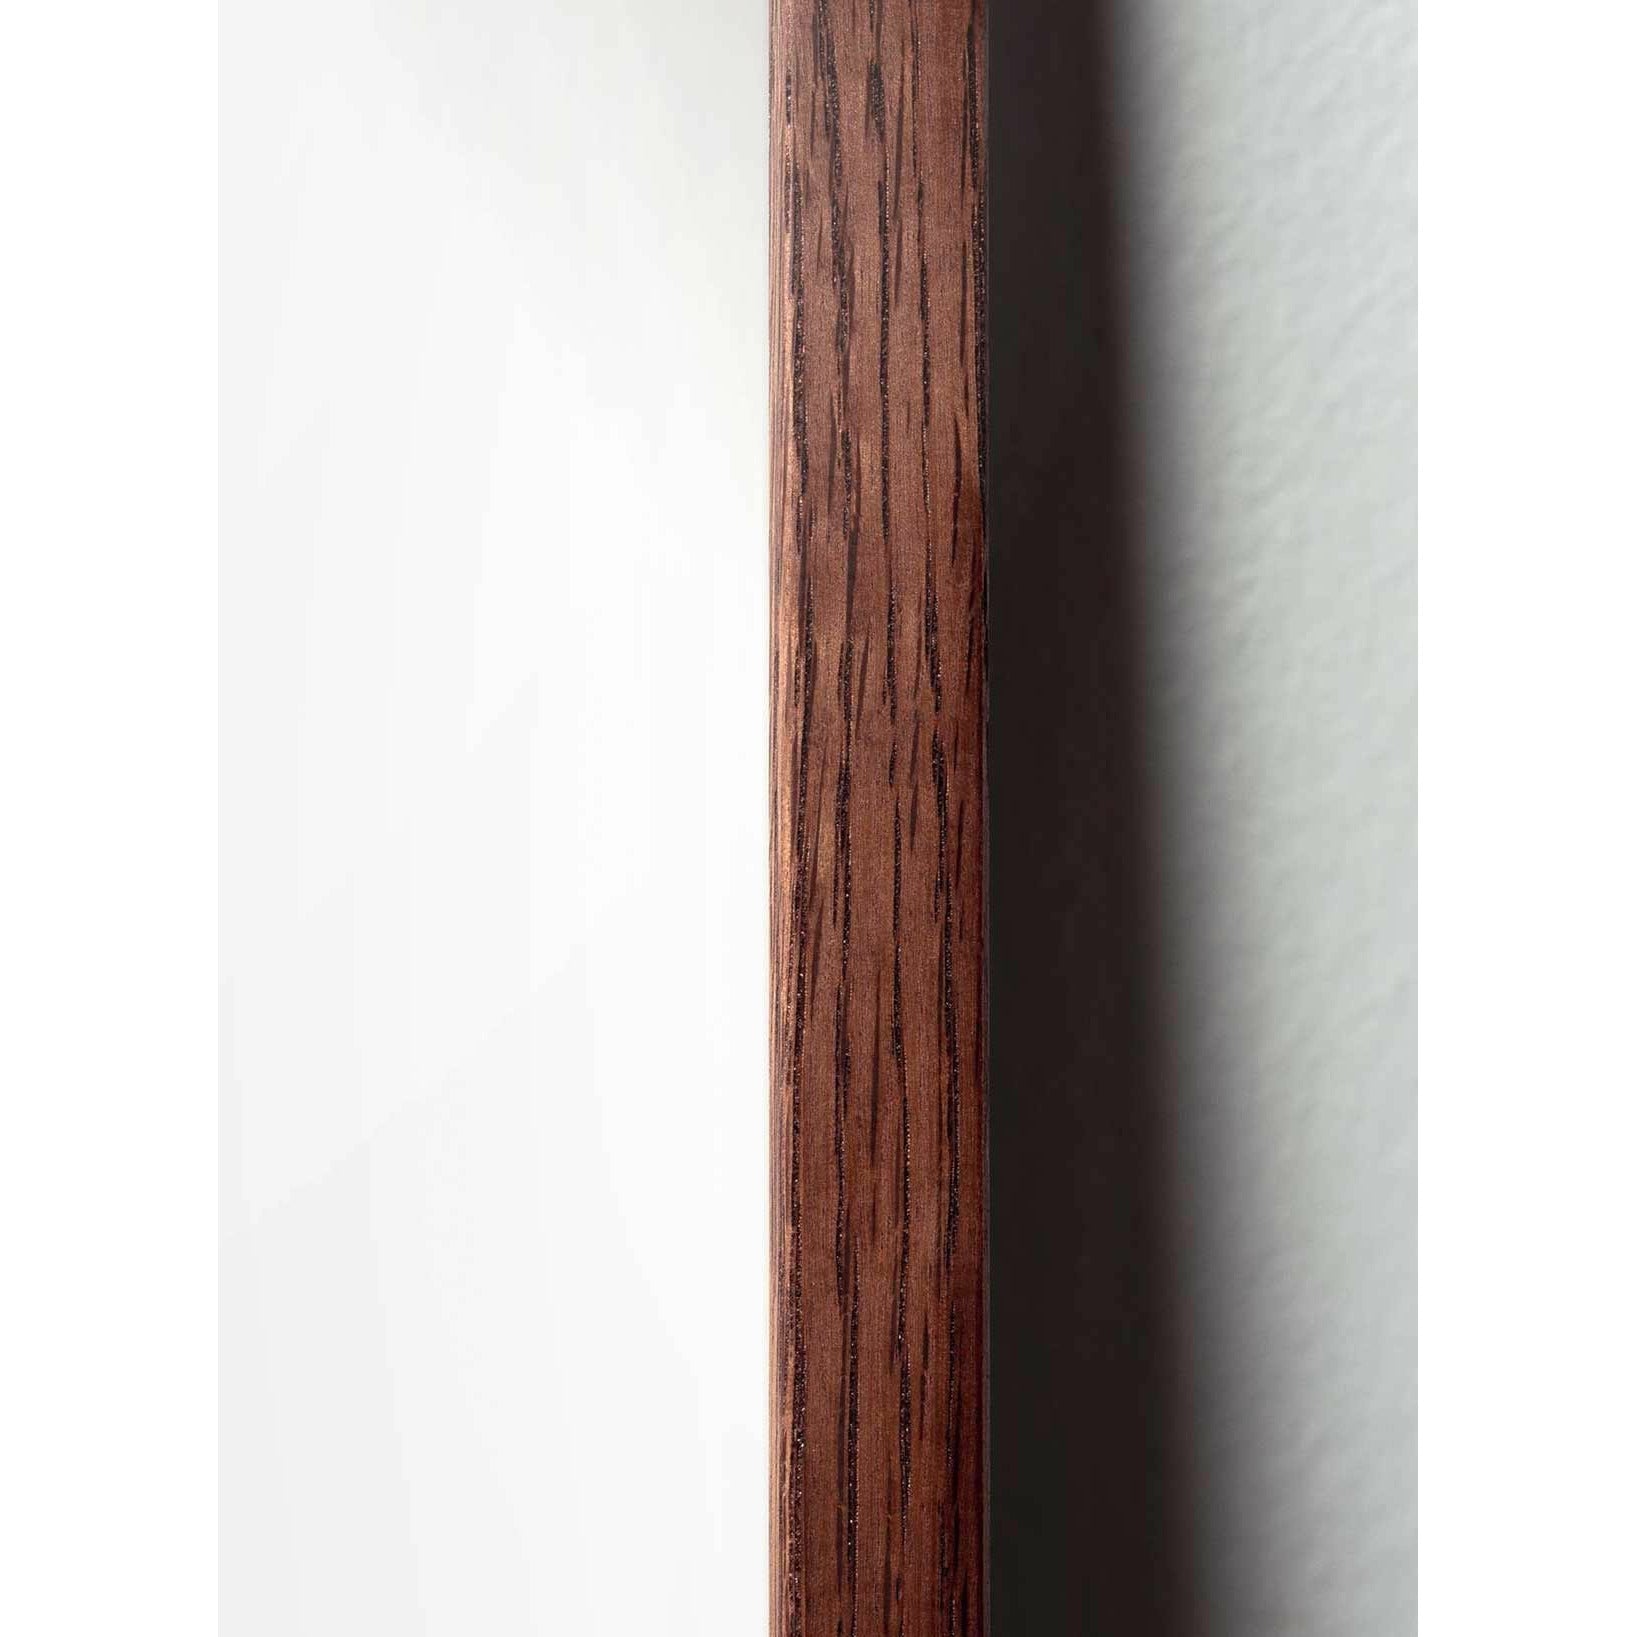 Póster clásico de BrainChild Teddy Bear, marco hecho de madera oscura de 30x40 cm, fondo blanco